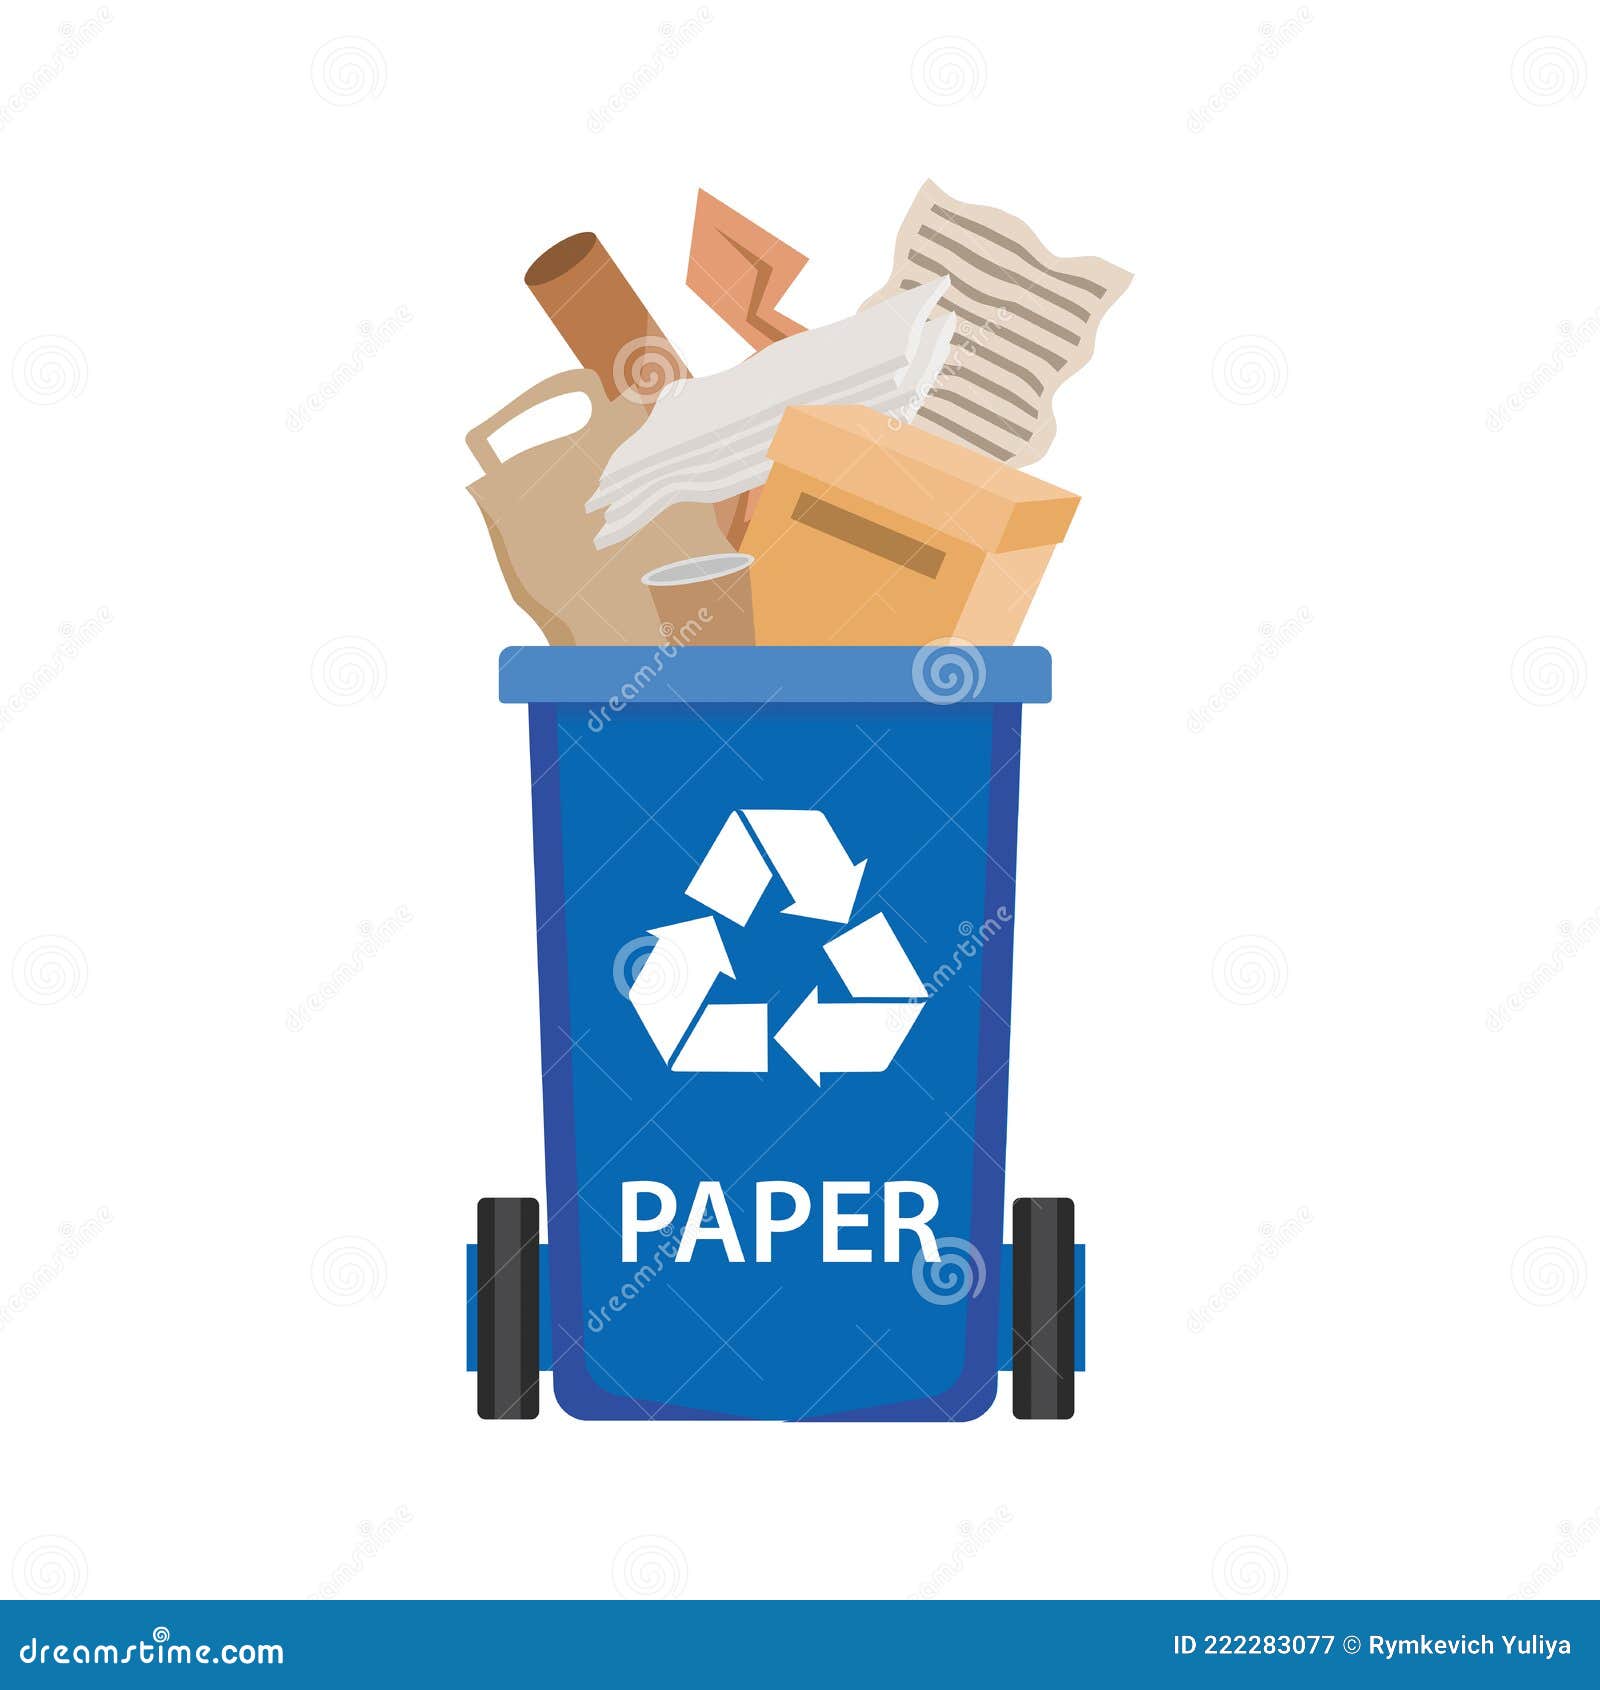 https://thumbs.dreamstime.com/z/poubelle-papier-conteneur-%C3%A0-ordures-avec-d%C3%A9chets-recyclables-illustration-vectorielle-isol%C3%A9e-222283077.jpg